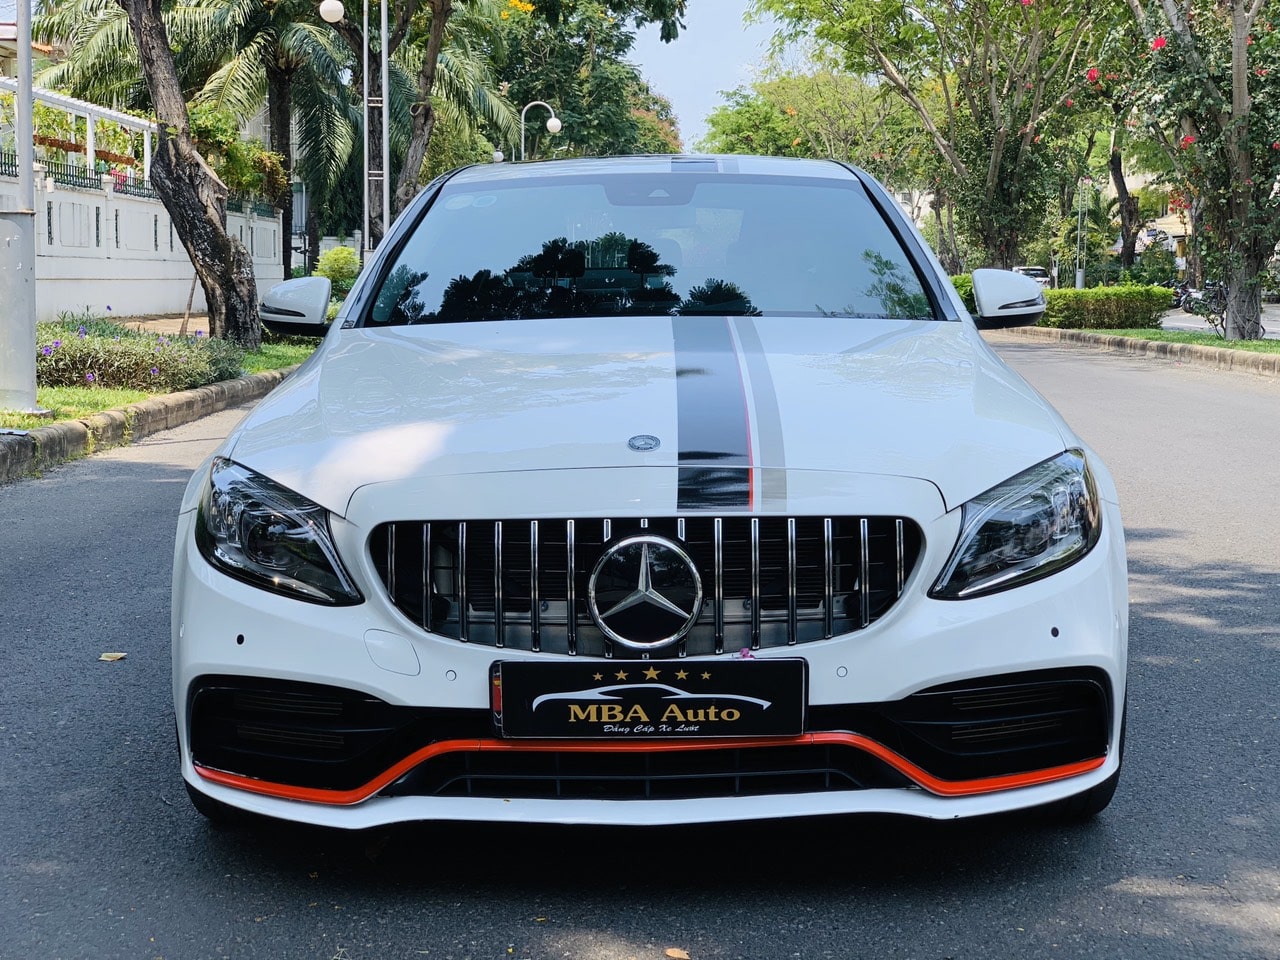 Chi tiết xe Mercedes C200 Exclusive 2019 dành cho doanh nhân